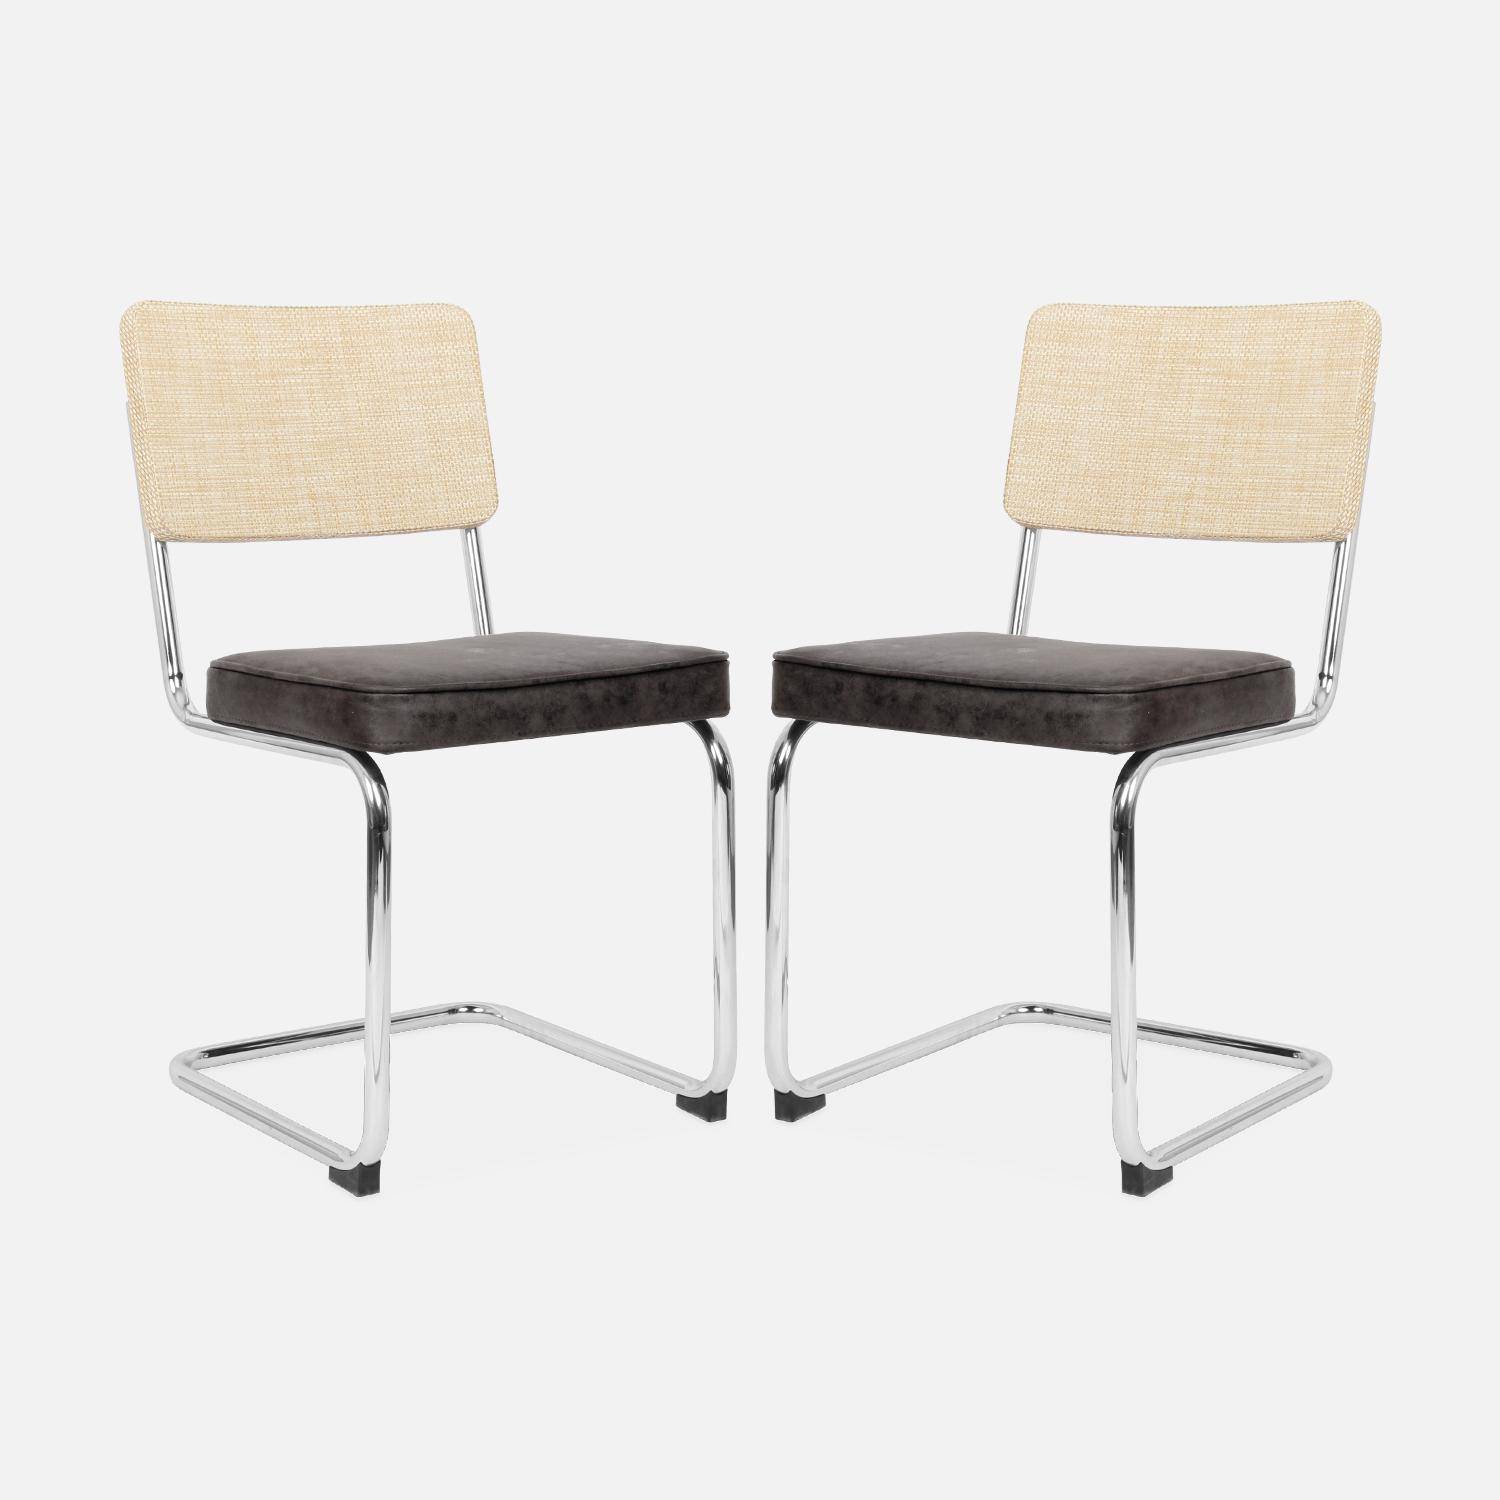 2 sillas cantilever - Maja - tela marrón oscuro y resina efecto ratán, 46 x 54,5 x 84,5cm   Photo5